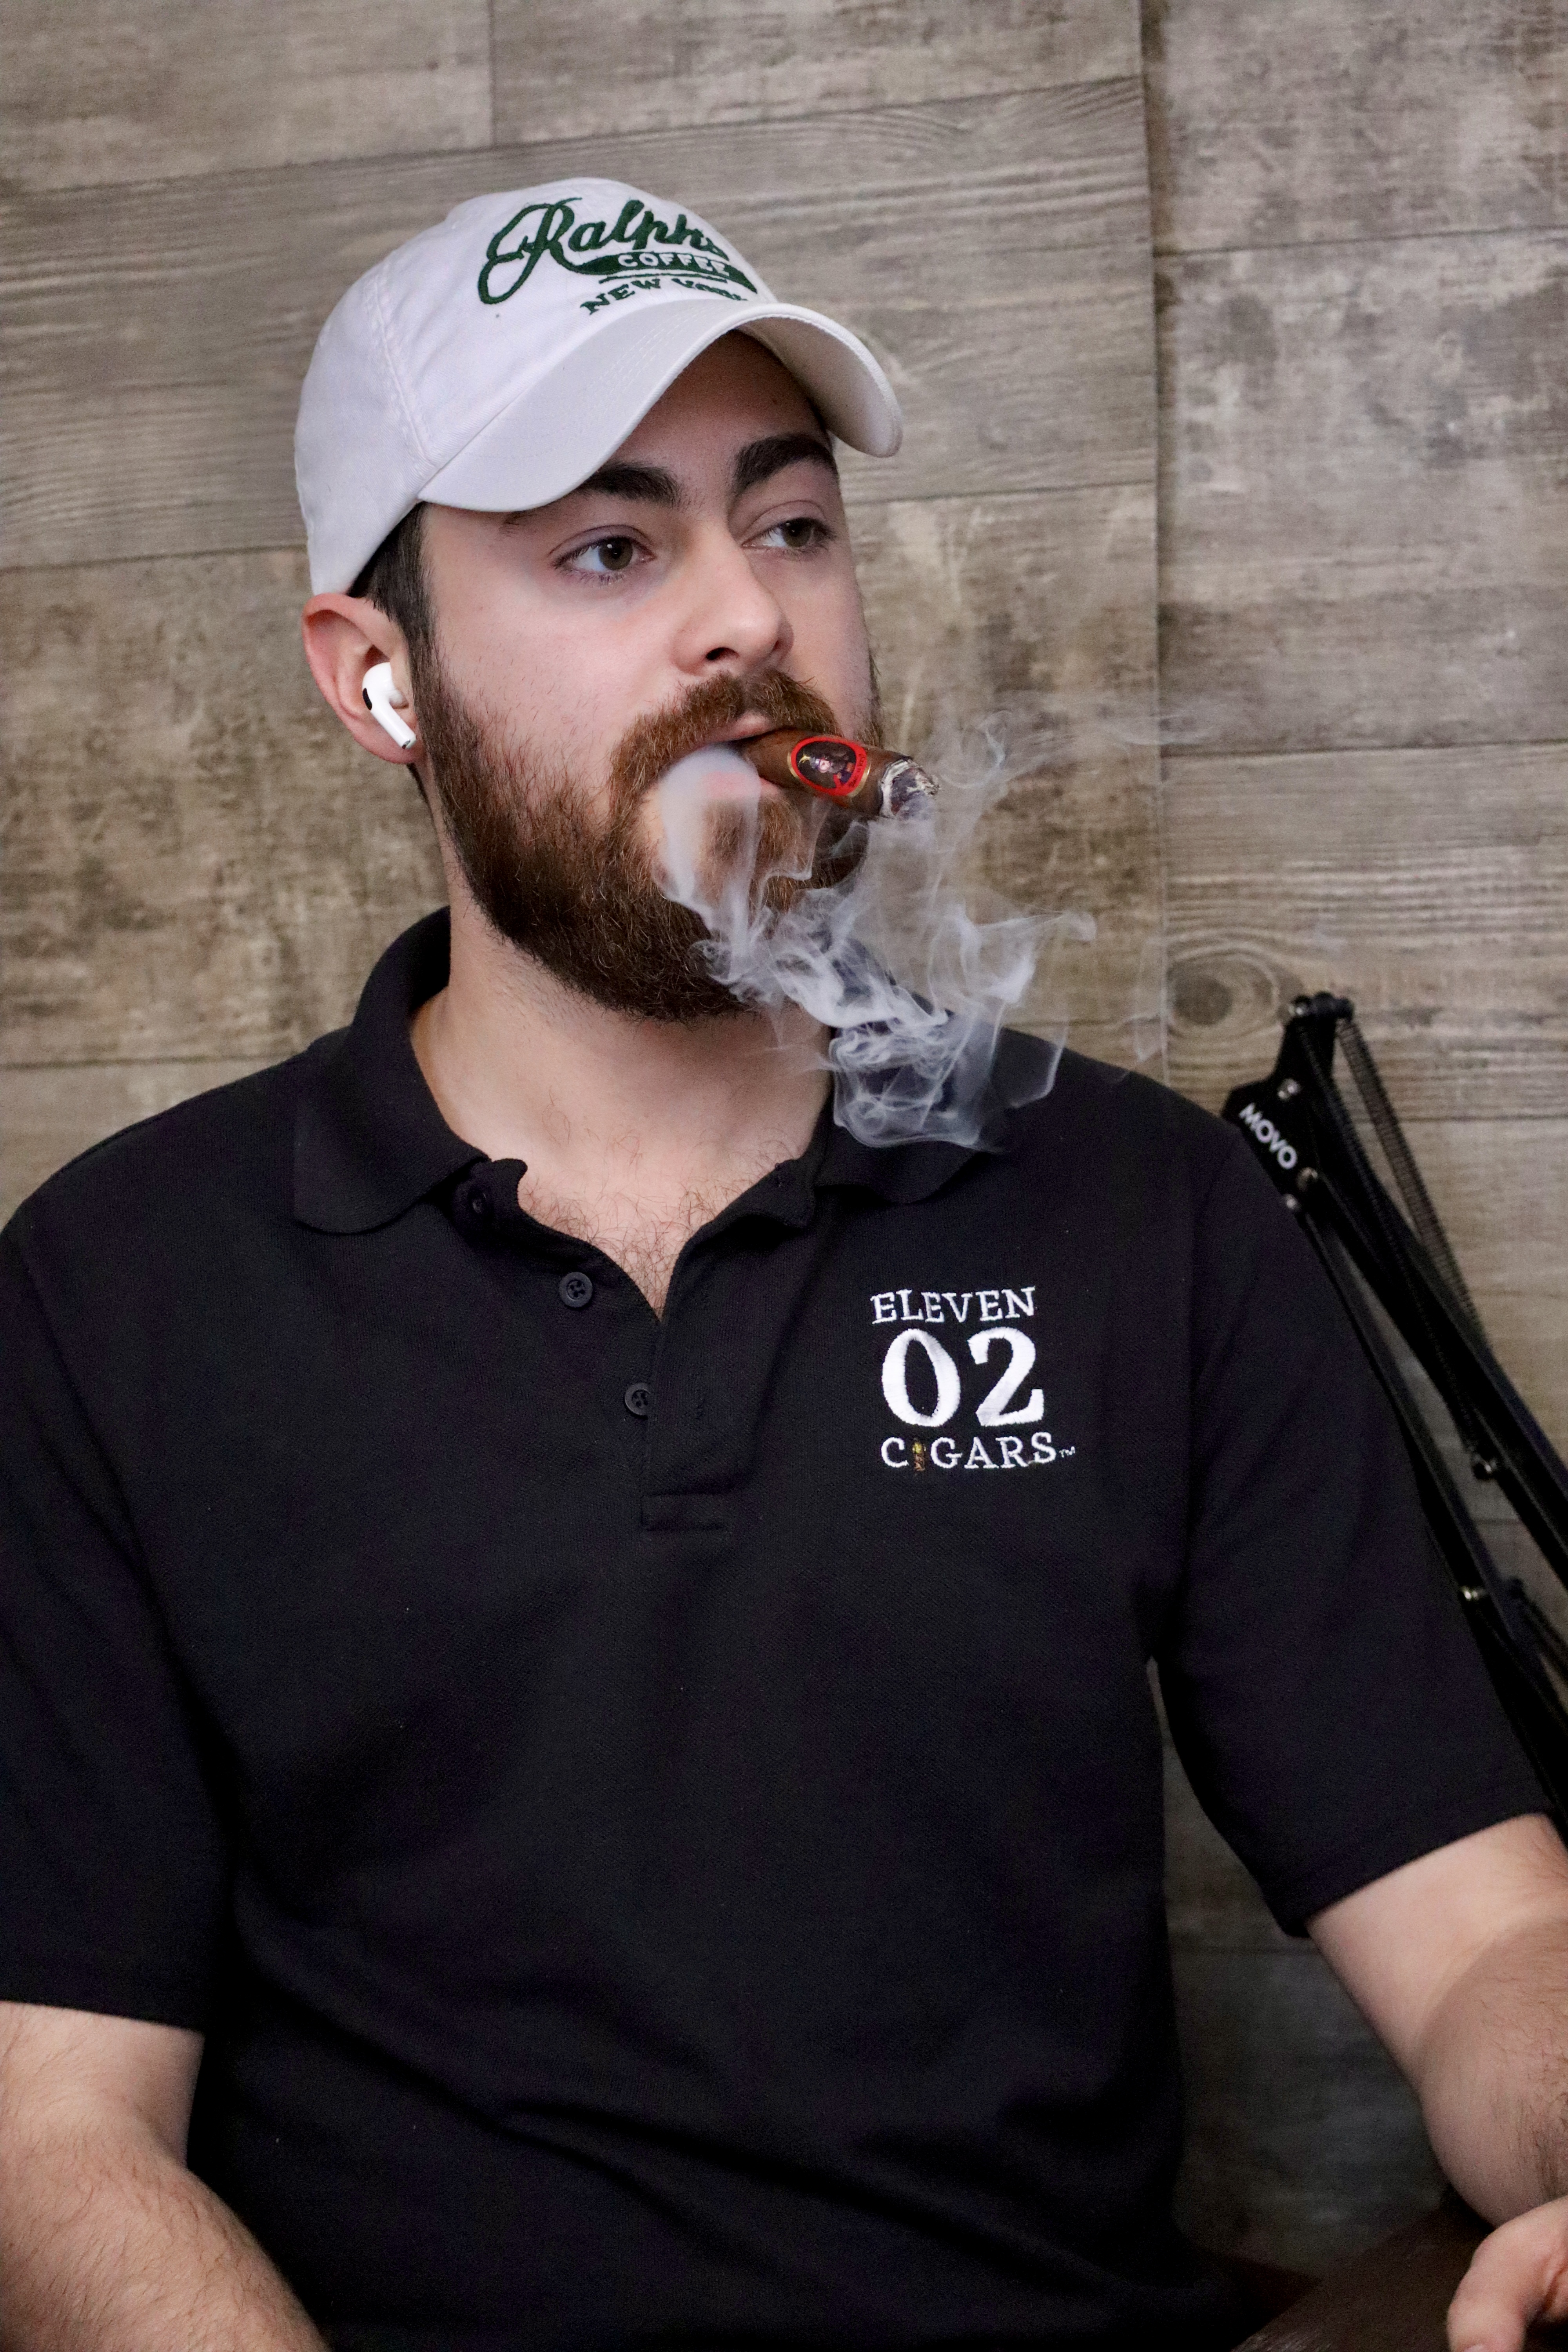 Alex smoking the Besa cigar